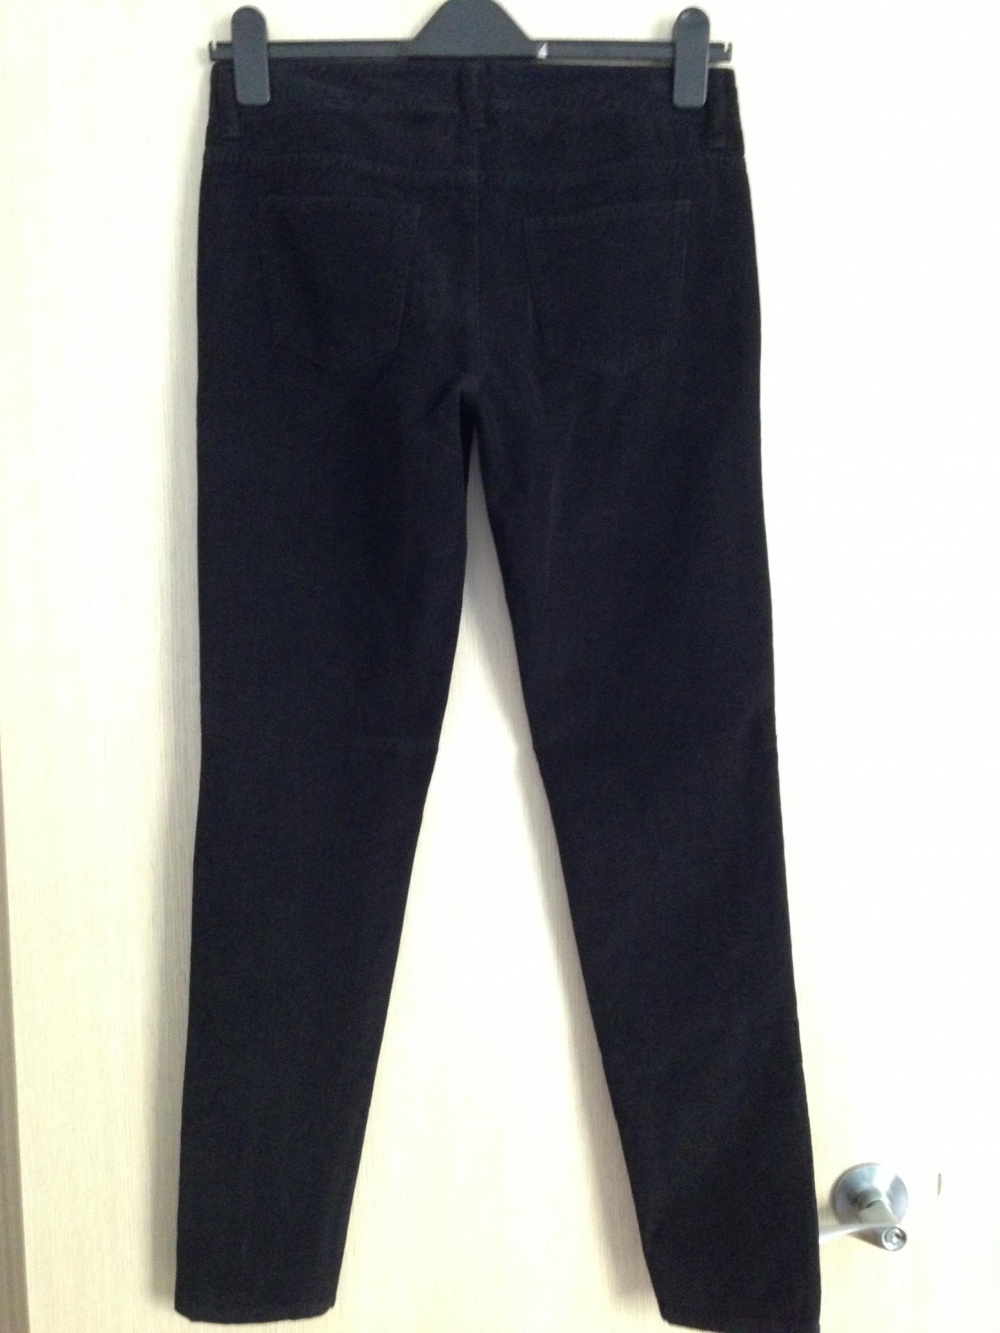 Вельветовые джинсы " Massimo Dutti ", 29-30 размер, Италия.